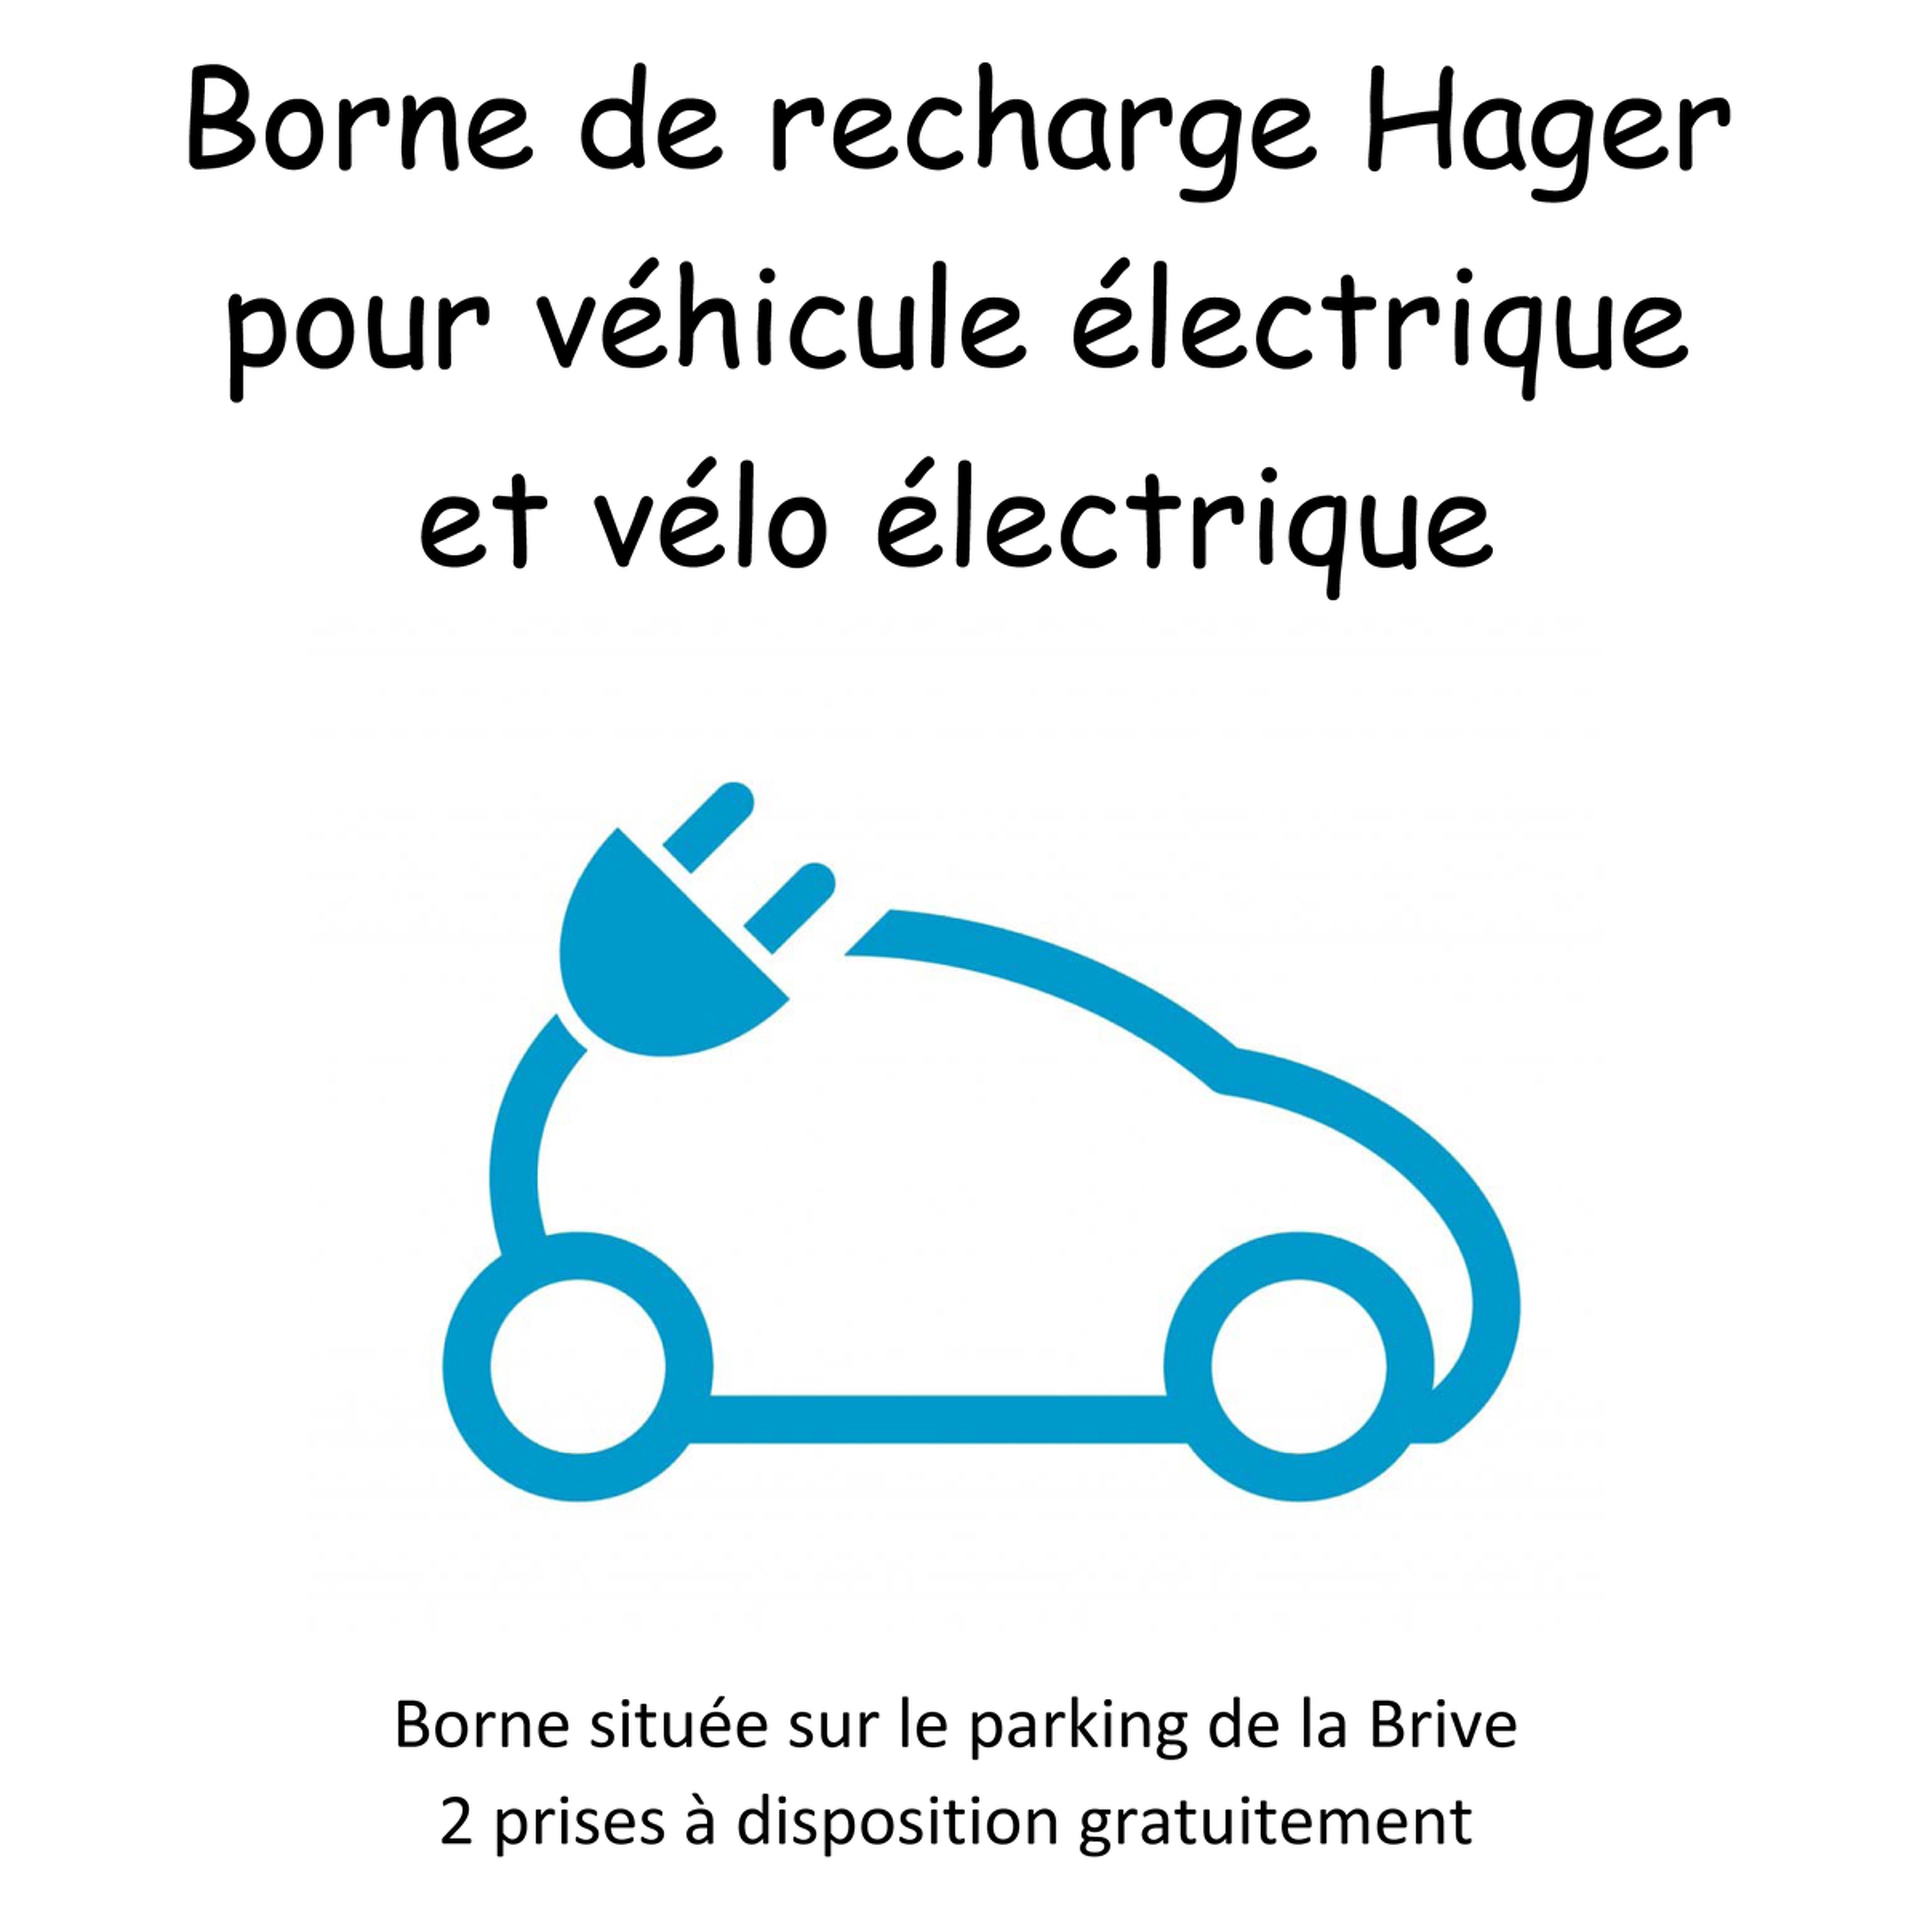 Borne de recharge véhicules électriques